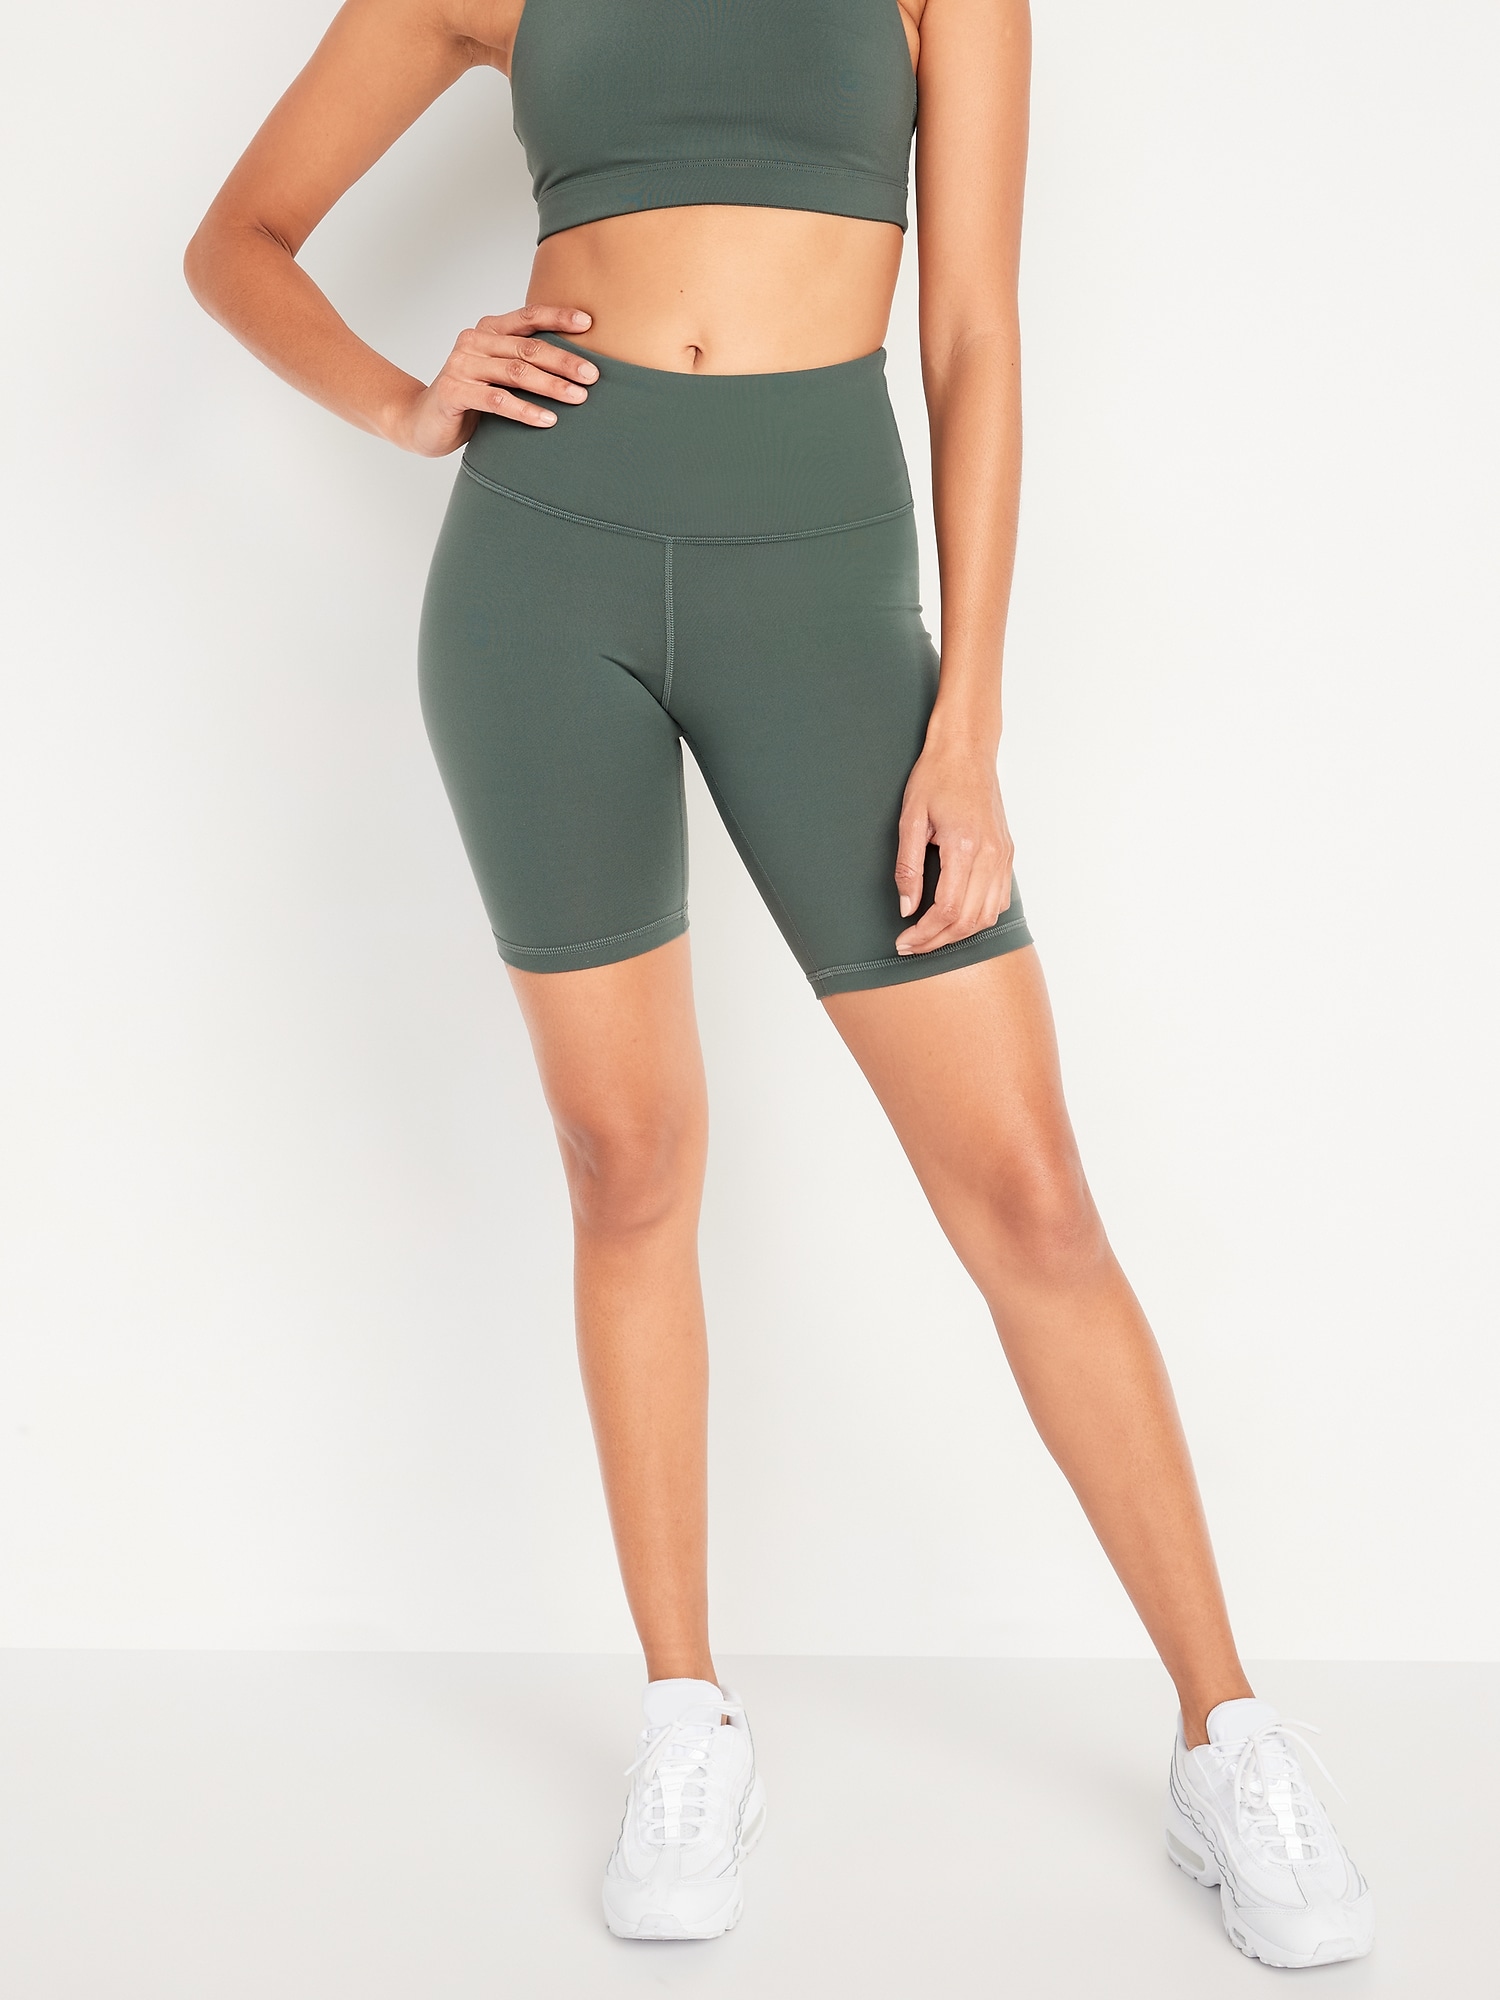 High-Waisted PowerPress Biker Shorts for Women - 8-inch inseam